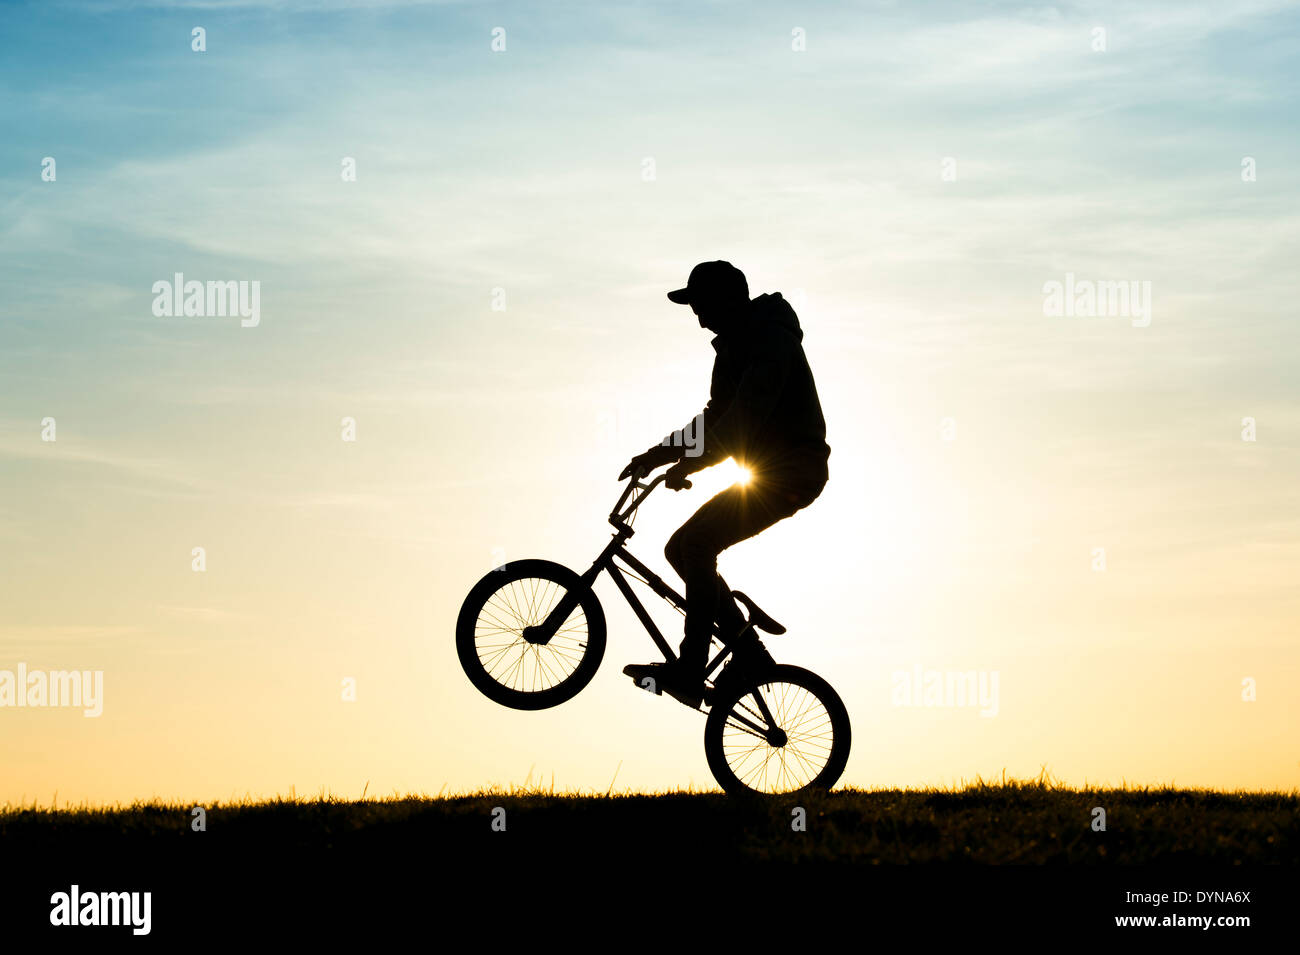 Junger Mann einen Wheelie auf seinem BMX-Fahrrad zu tun. Silhouette Stockfoto